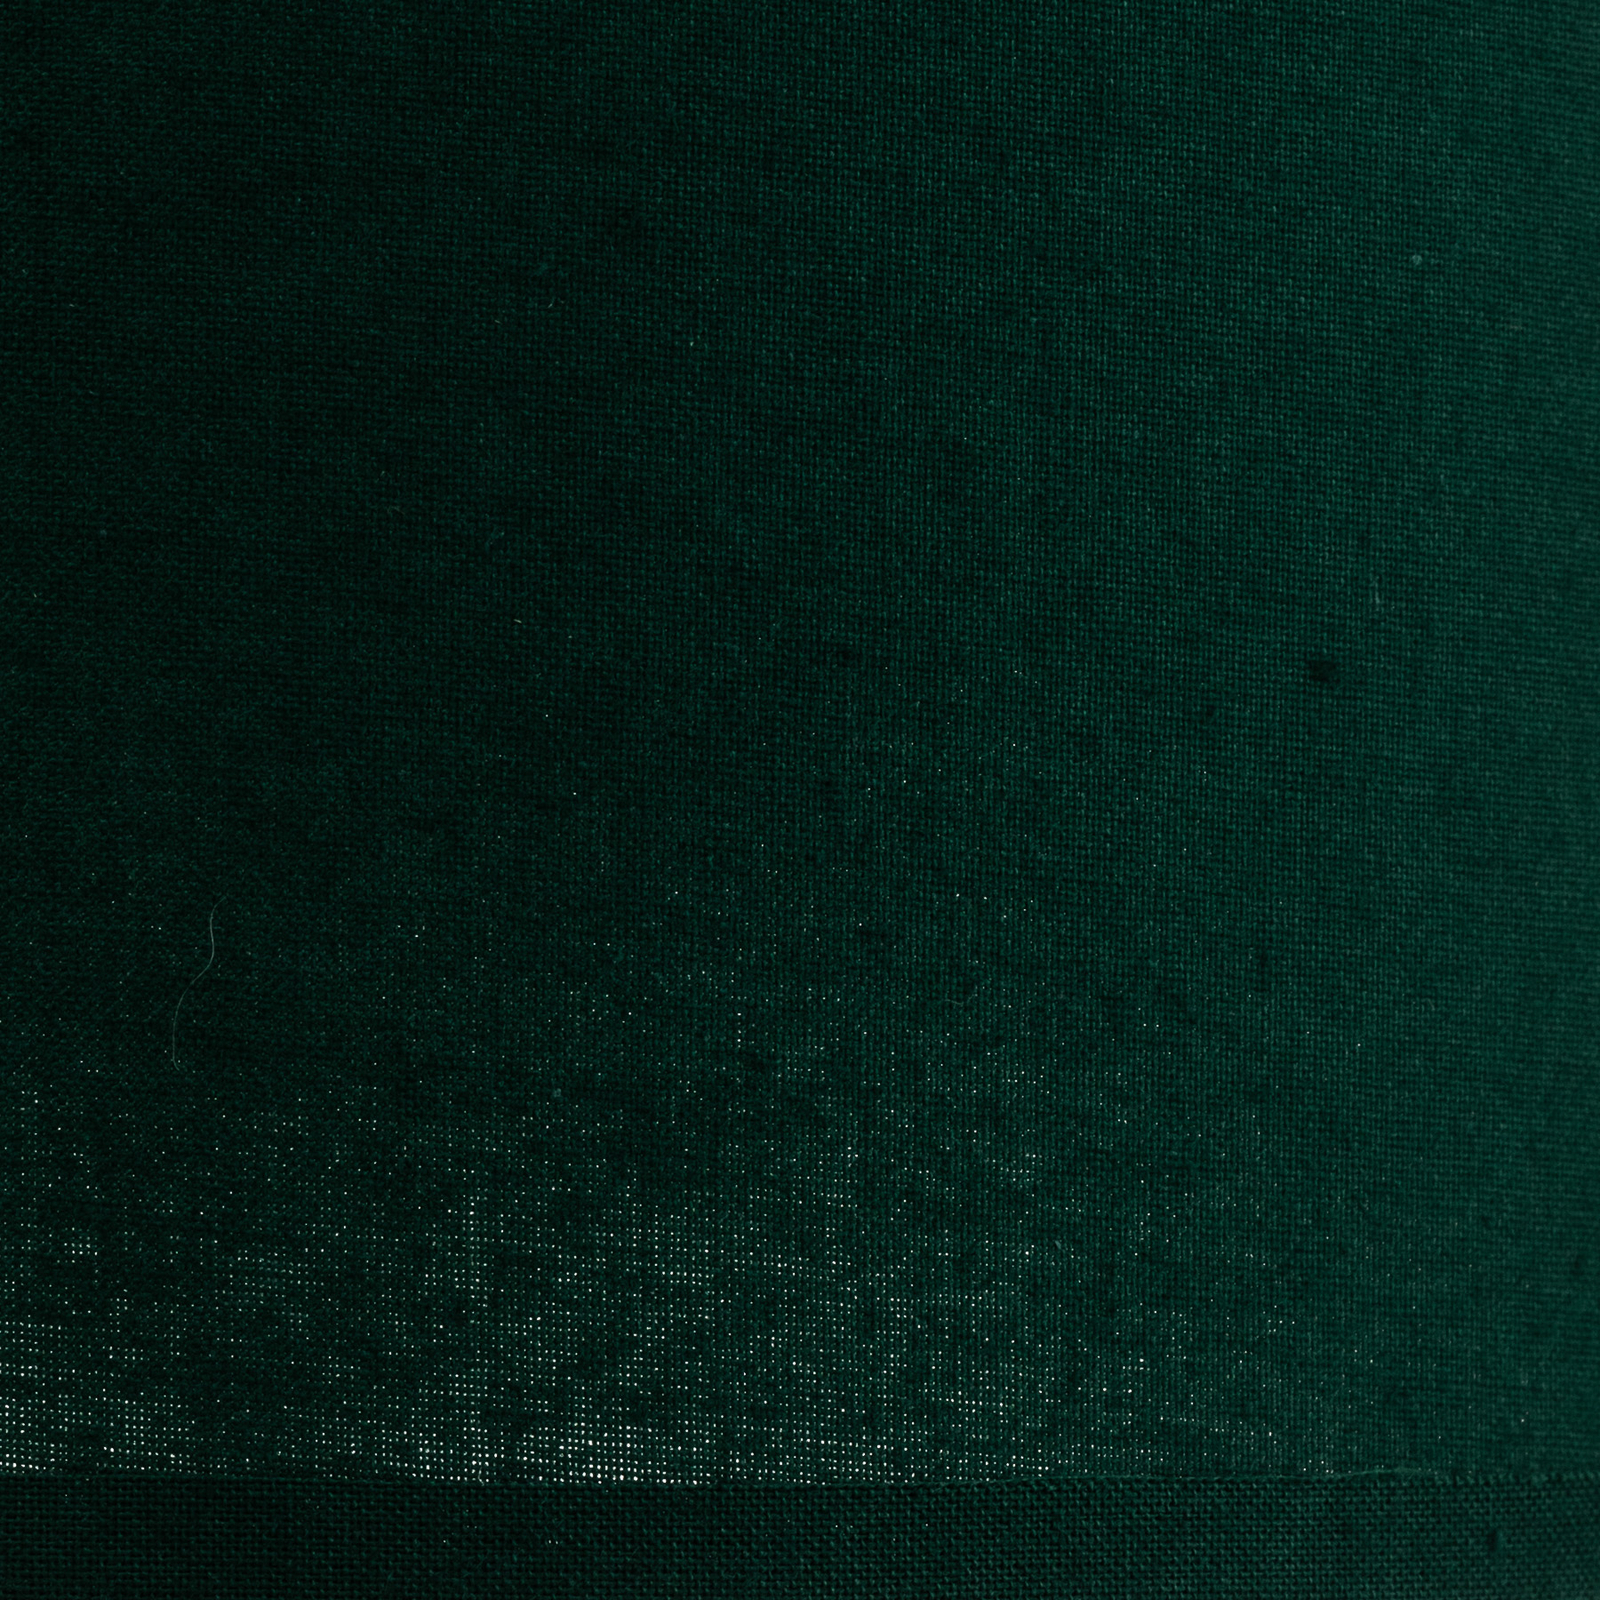 Lampenschirm Roller, grün, Ø 15 cm, Höhe 15 cm